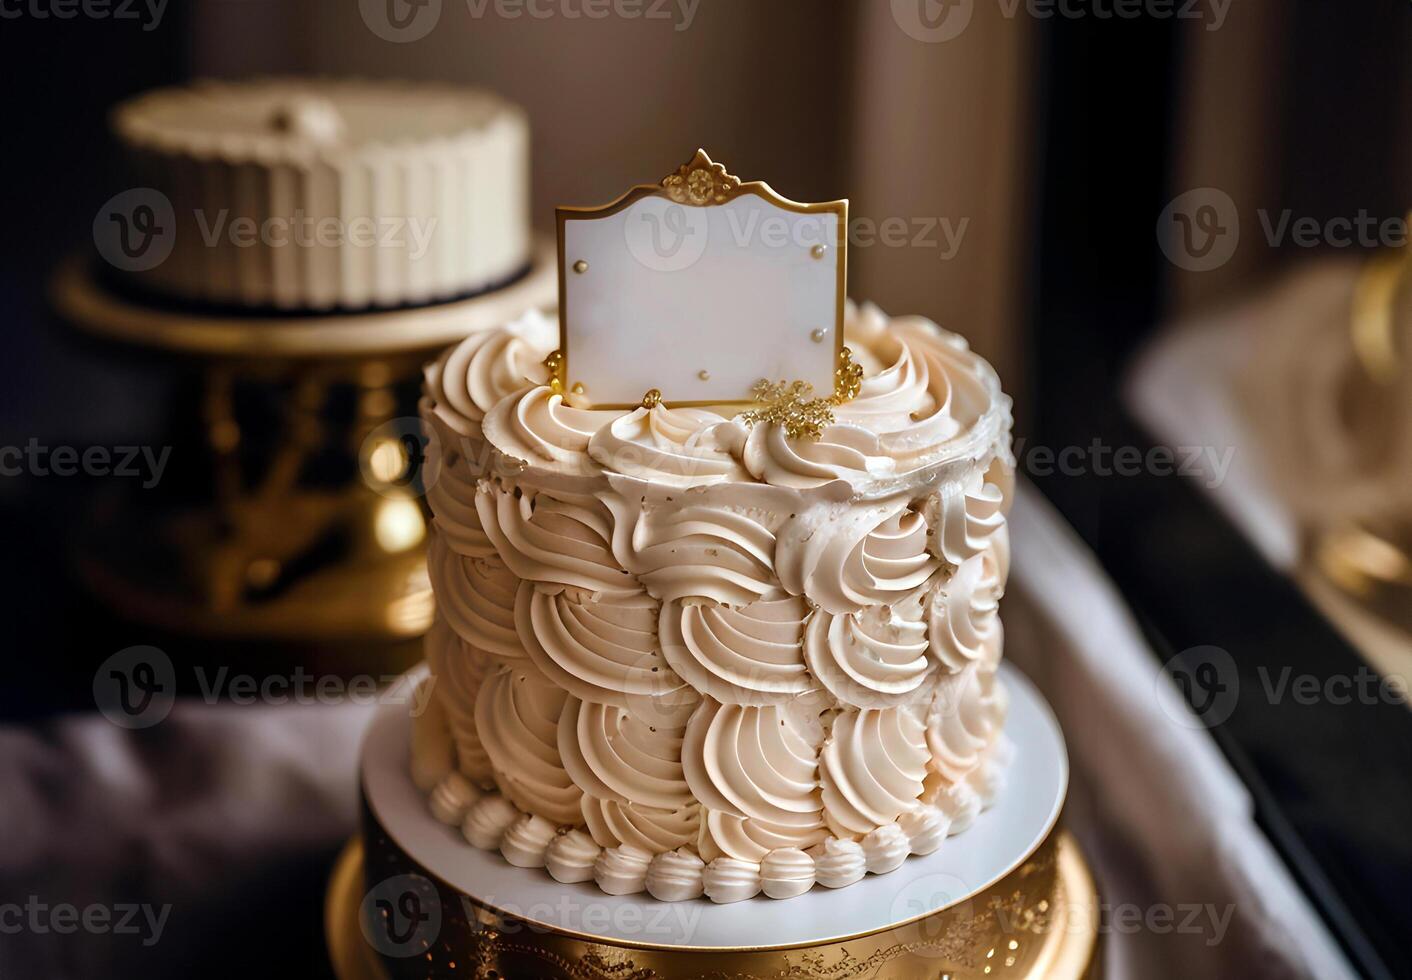 generativo ai imagen, cerca arriba lujoso cremoso pastel color pastel con hermosa decorado y blanco tarjeta en arriba, delicioso panadería, saludos, celebrar, contento cumpleaños, Felicidades, festivo foto